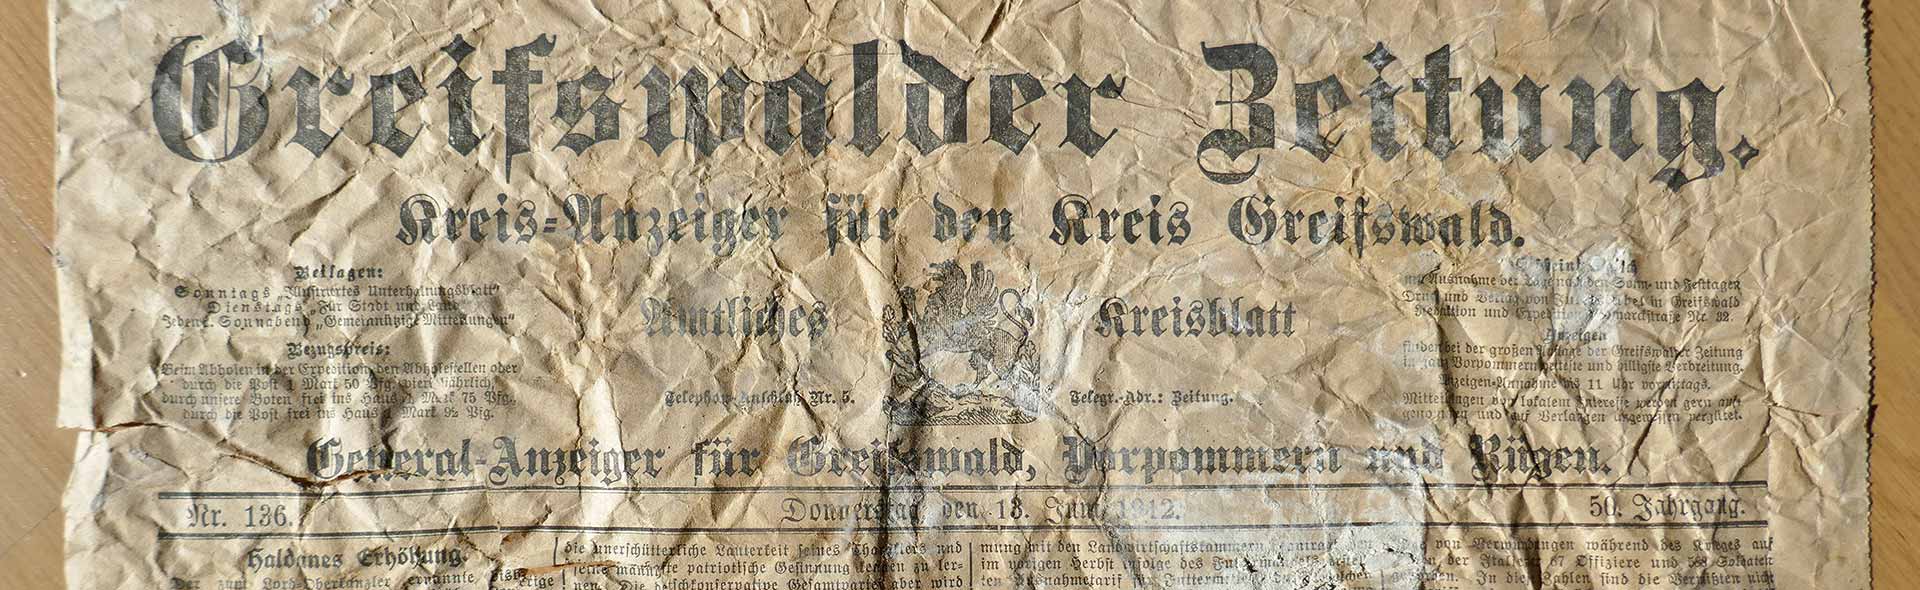 OJC-Greifswald: Alte Greifswalder Zeitung aus dem kernsanierten Haus